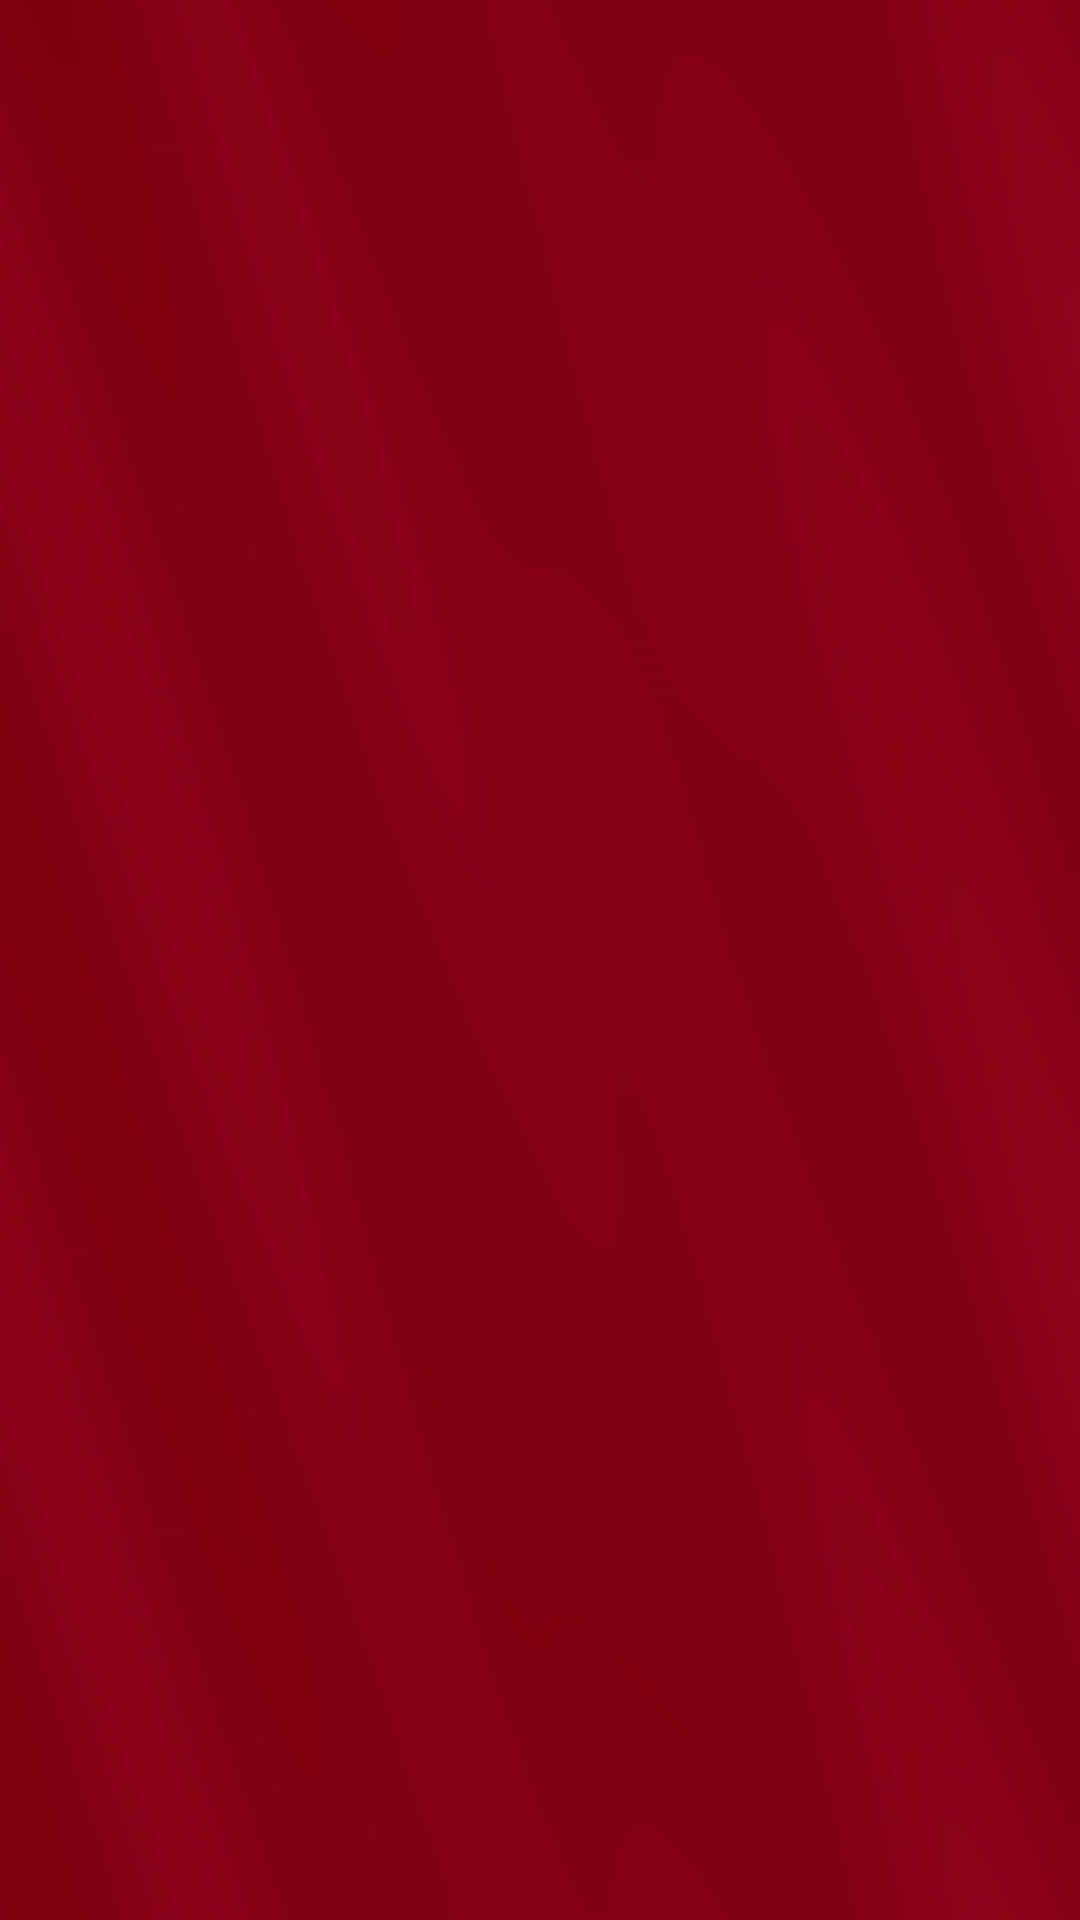 ventil Poleret slutningen 200+] Red Color Background s | Wallpapers.com